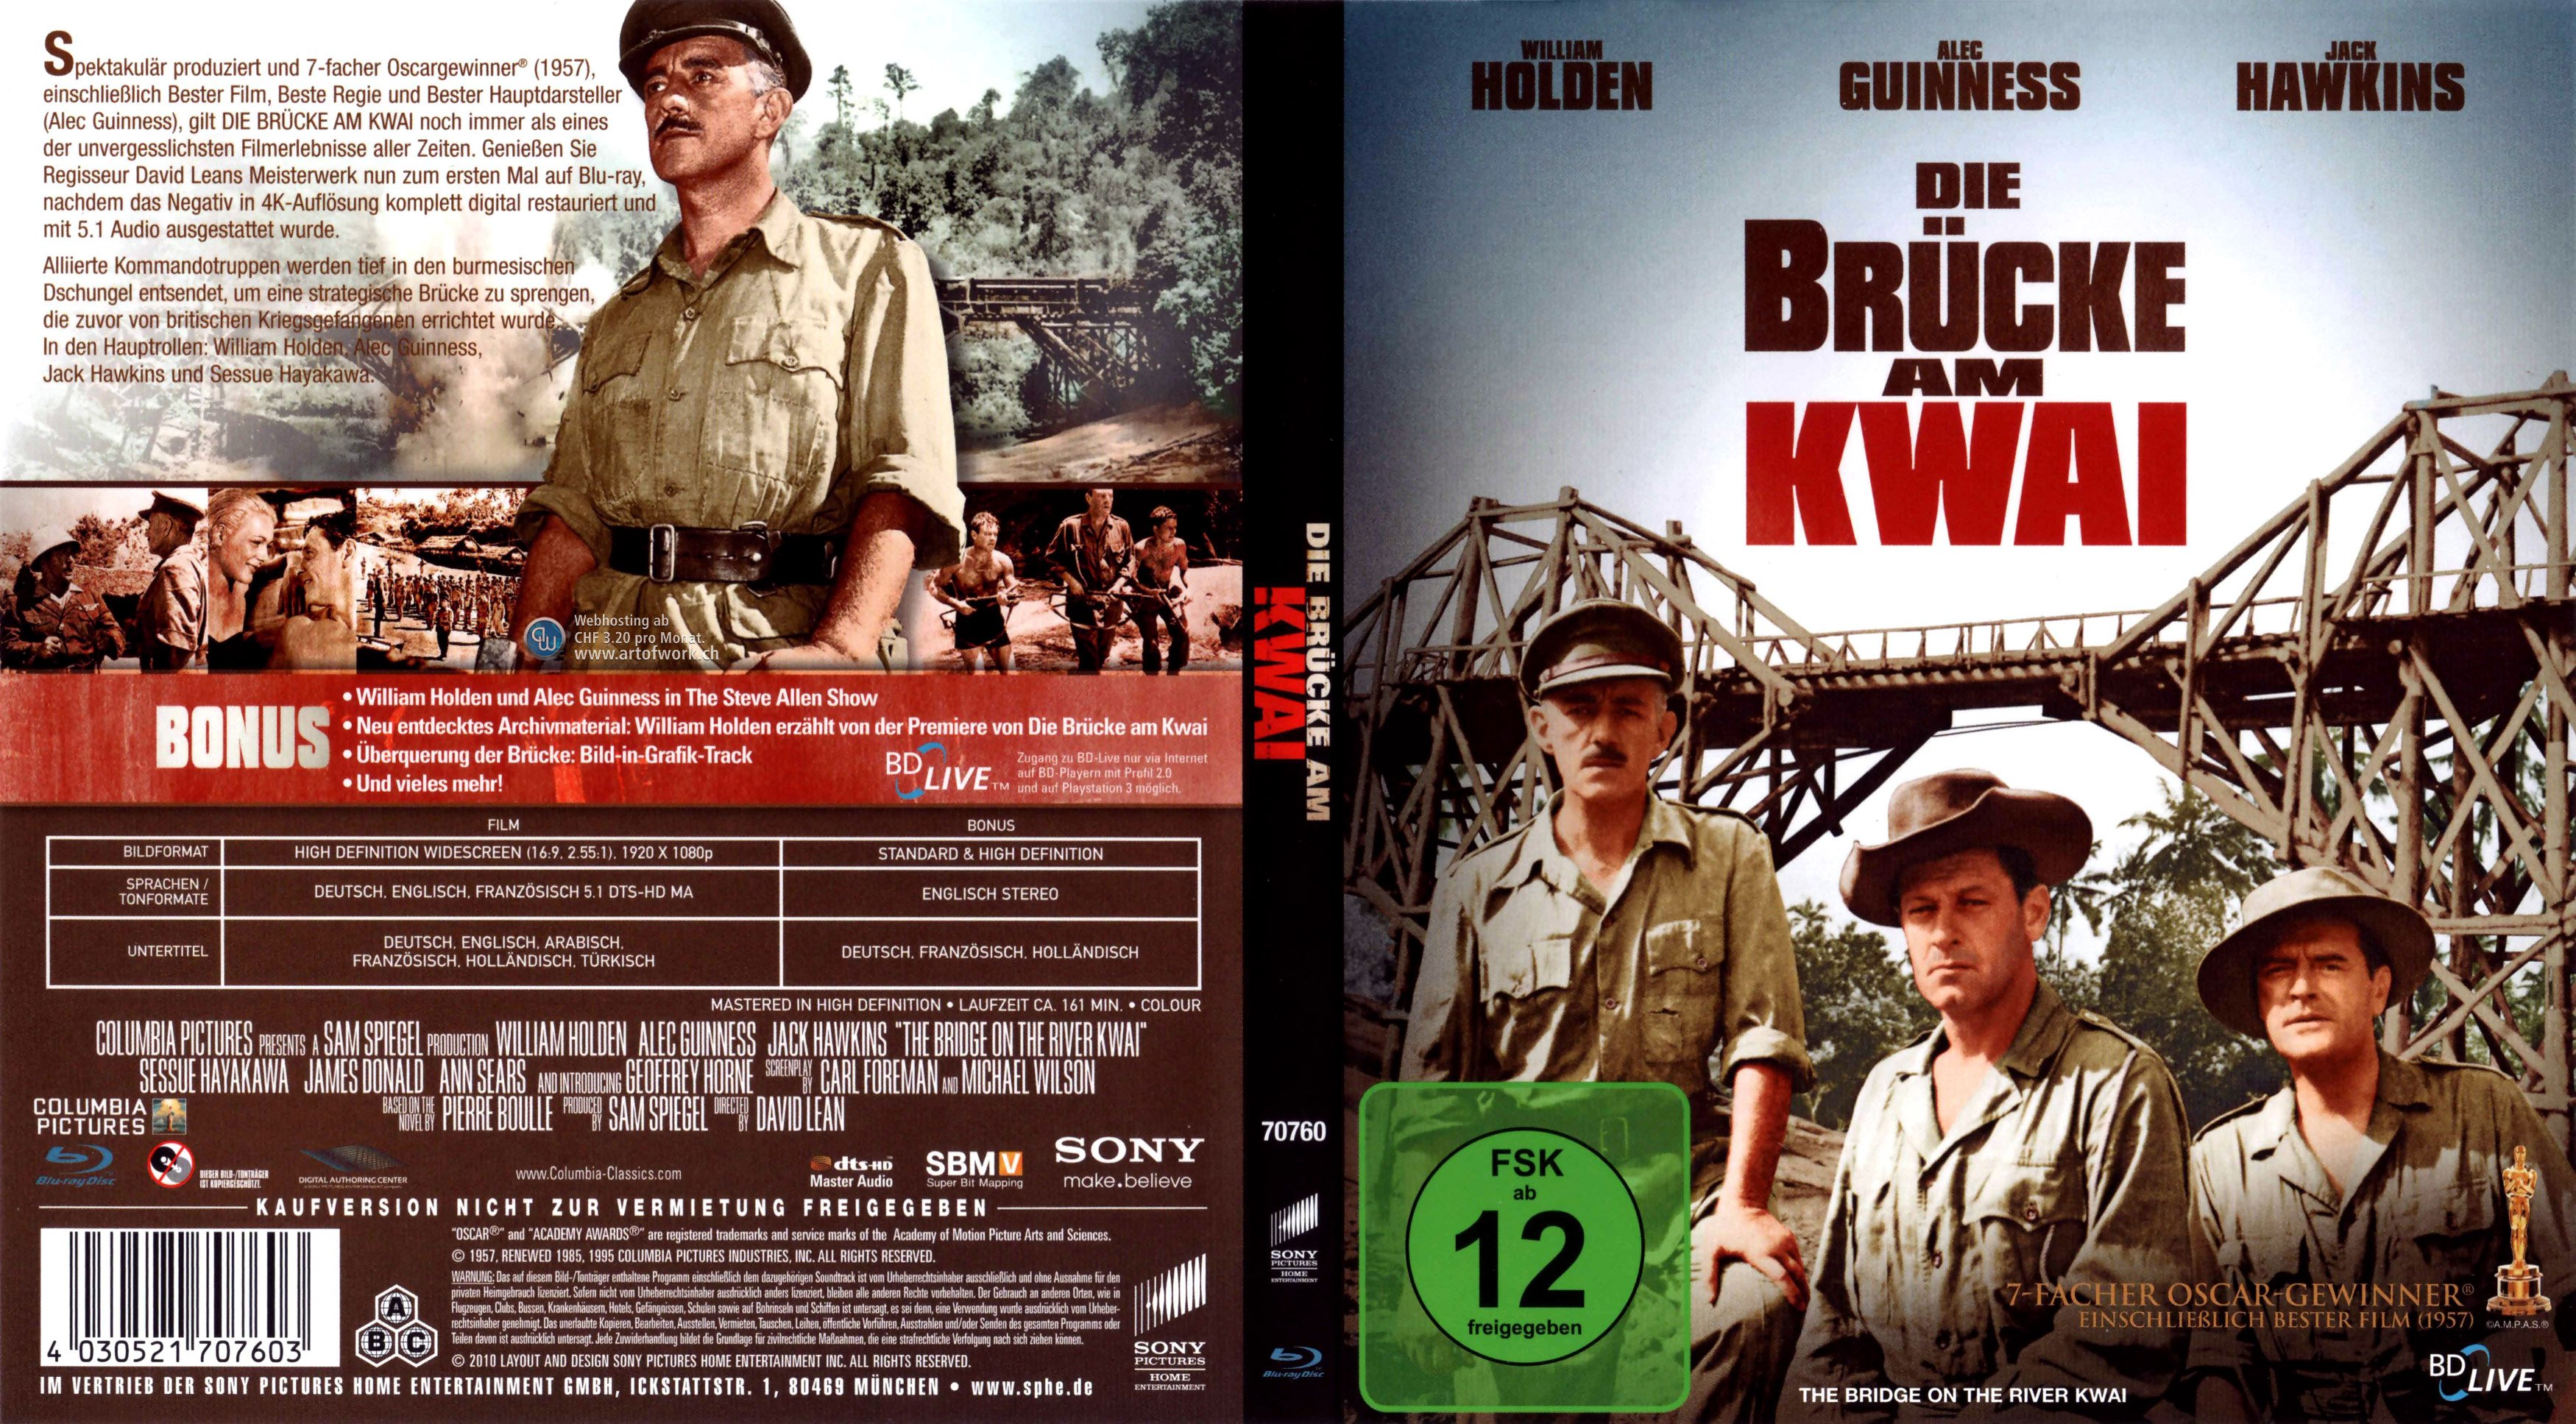 The Bridge Die Brcke 1959 - Rotten Tomatoes